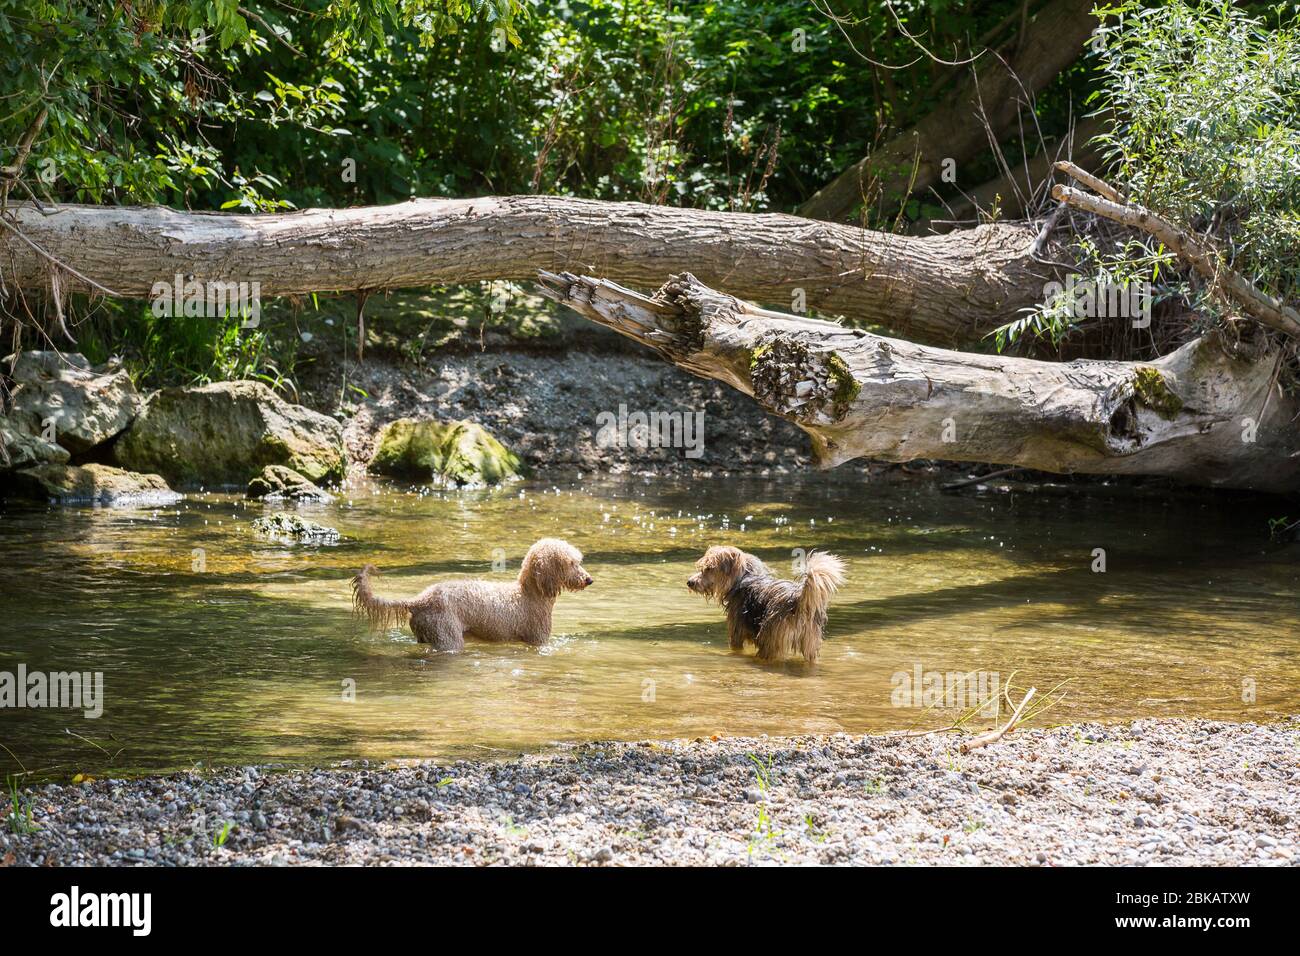 Zwei glückliche Hunde ein junger Terrier und ein junger Pudel spielen im Wasser und genießen den kalten Fluss an einem heißen Sommertag, Leitha Fluss, Österreich Stockfoto